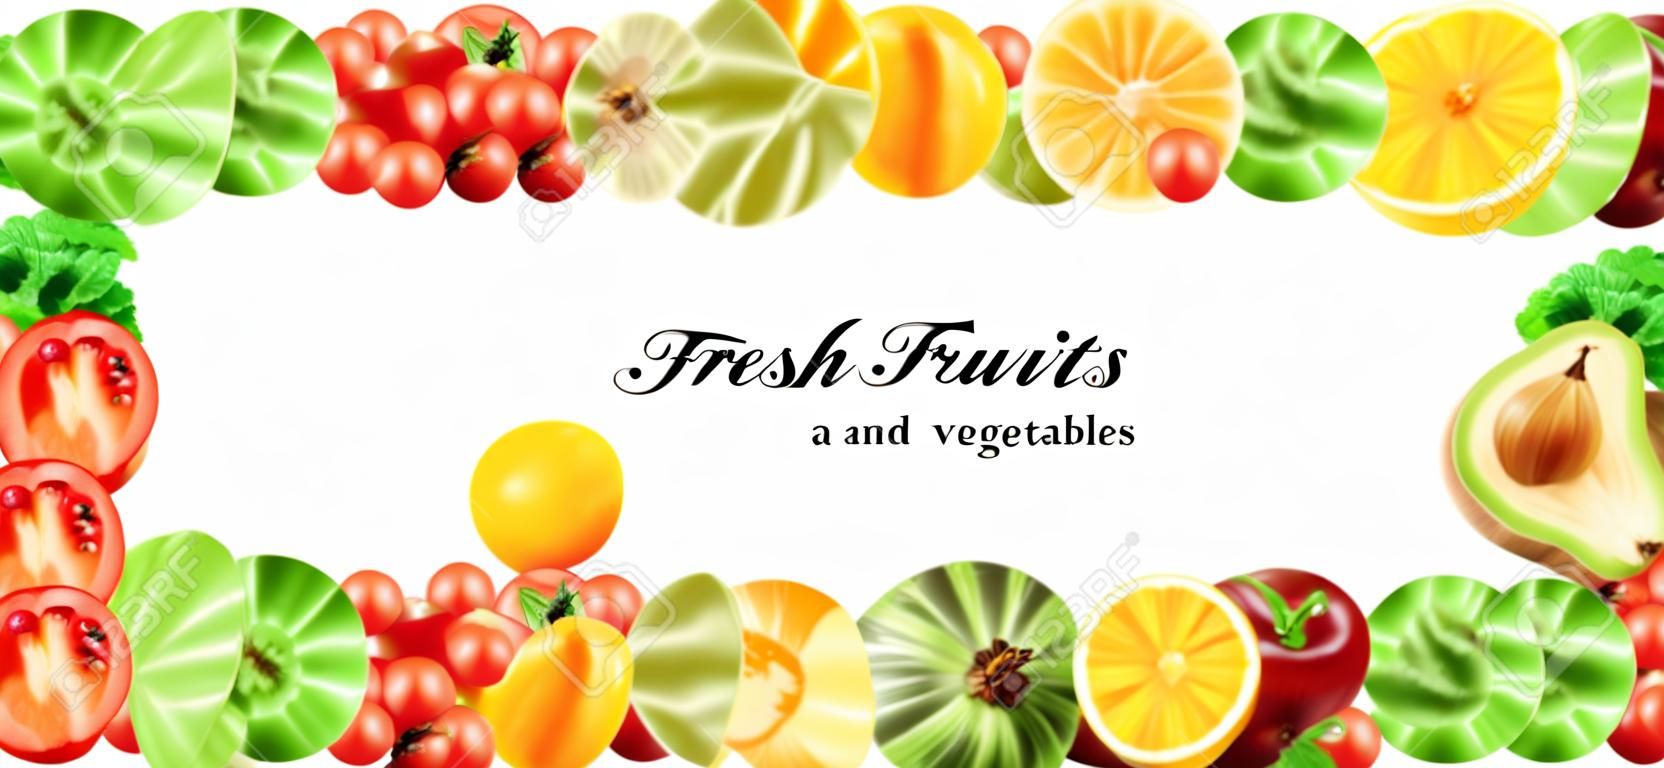 新鲜果蔬健康食品概念